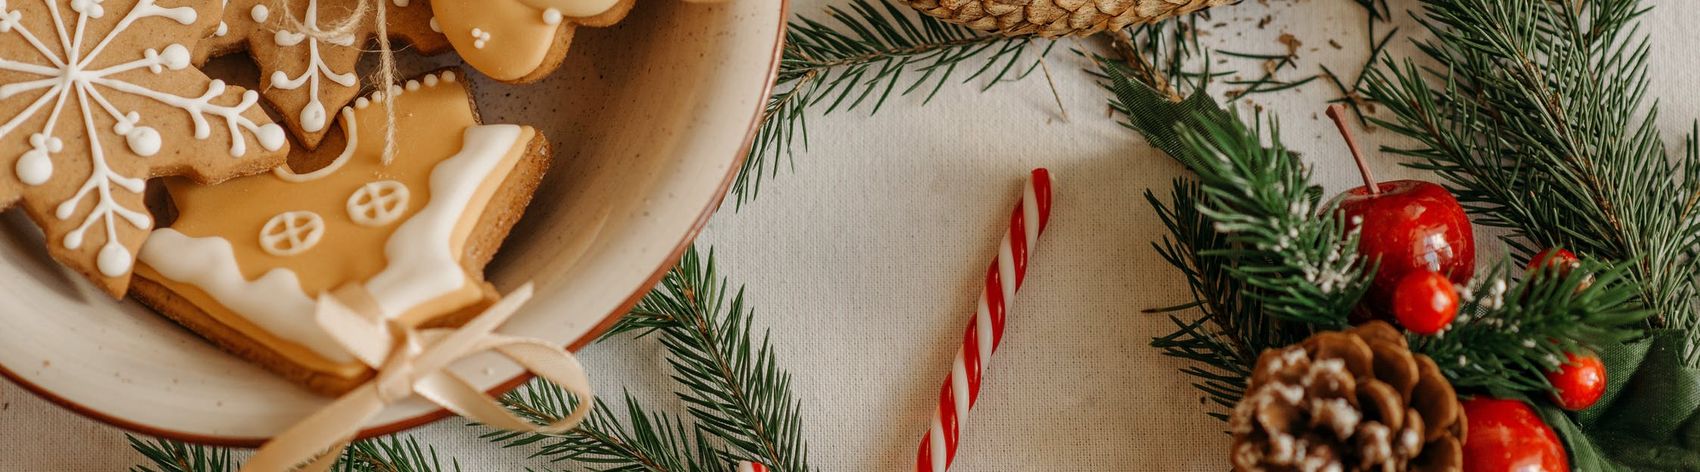 Weihnachtlich dekorierter Keksteller